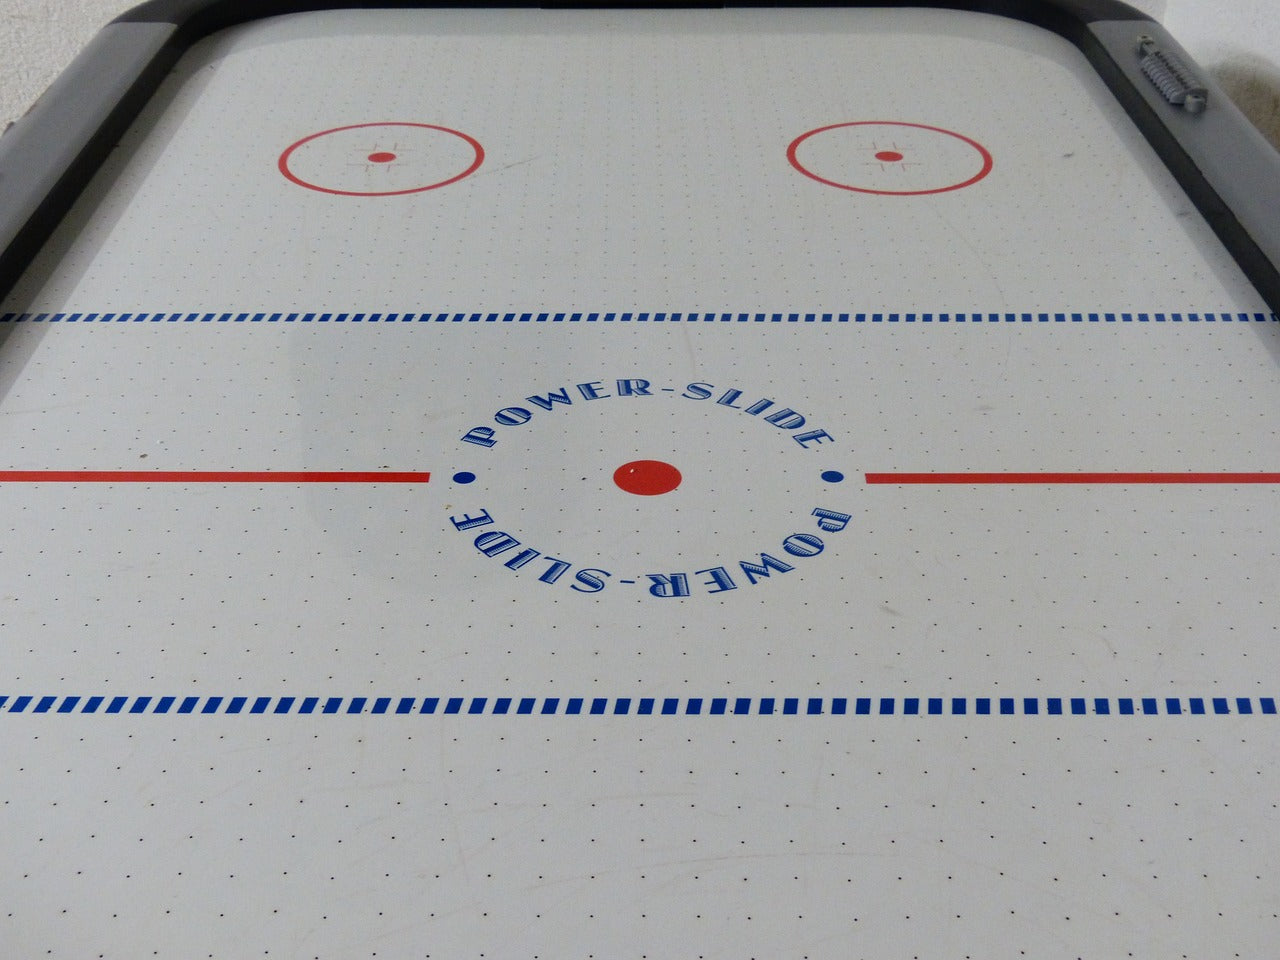 ✔️ Des heures de compétition amicale pour toute la famille. ✔️ Reproduisez l'intensité du hockey sur glace dans le confort de votre maison. ✔️ Qualité supérieure pour une expérience de jeu exceptionnelle.  Explorez notre sélection de jeux de table de hockey sur LaBoutike dès aujourd'hui !  #JeudeTabledeHockey #Hockey #LaBoutike #DivertissementFamilial #CompétitionAmicale #JeuxD'intérieur #LoisirsÀLaMaison #HockeySurTable #FunEnFamille